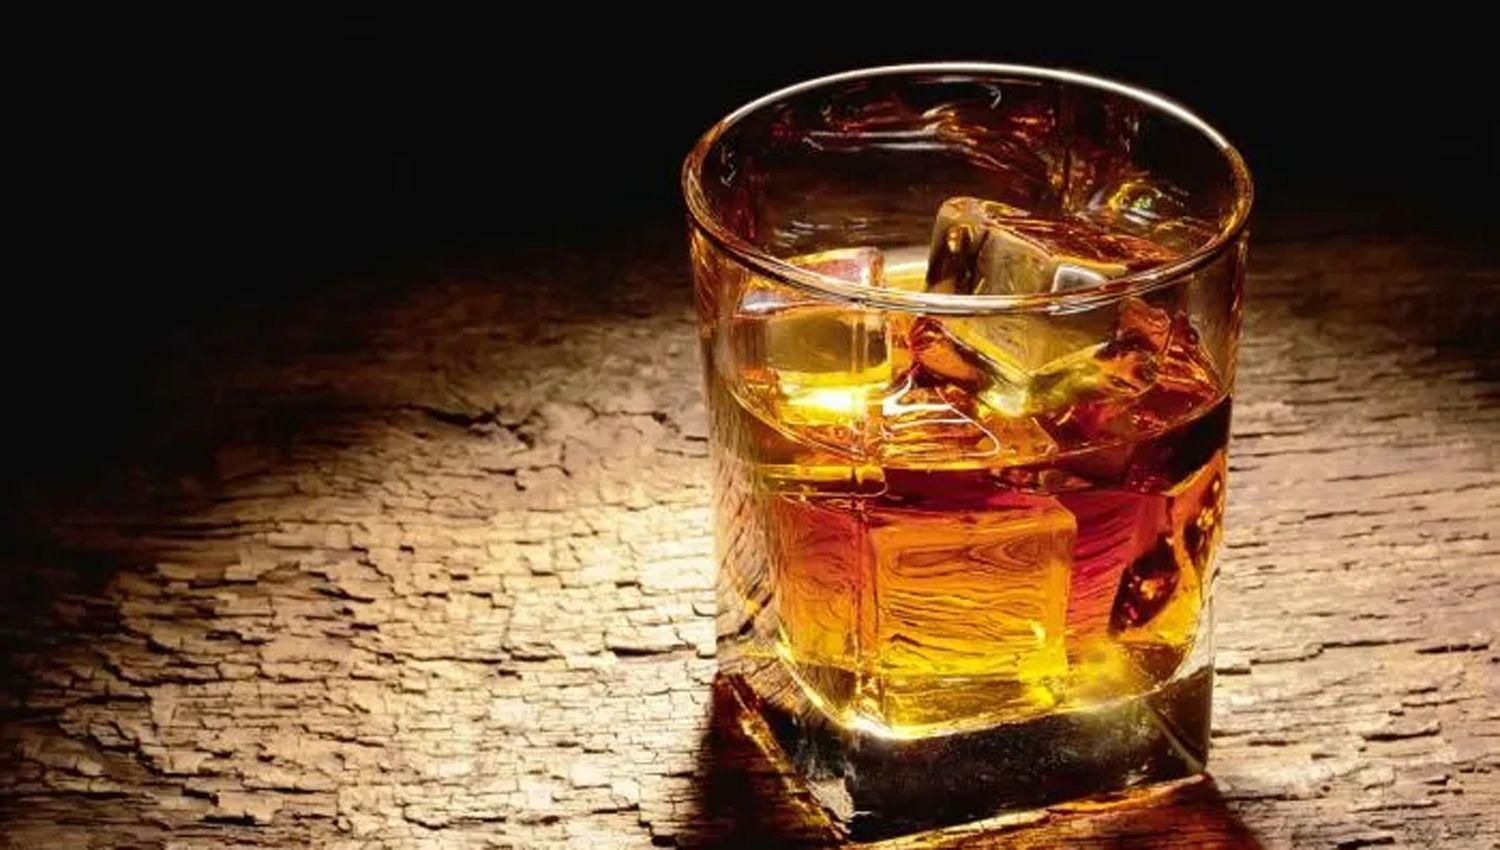 La curiosa historia del whisky maacutes antiguo del mundo- su duentildeo fue un magnate financiero y ahora sale a subasta